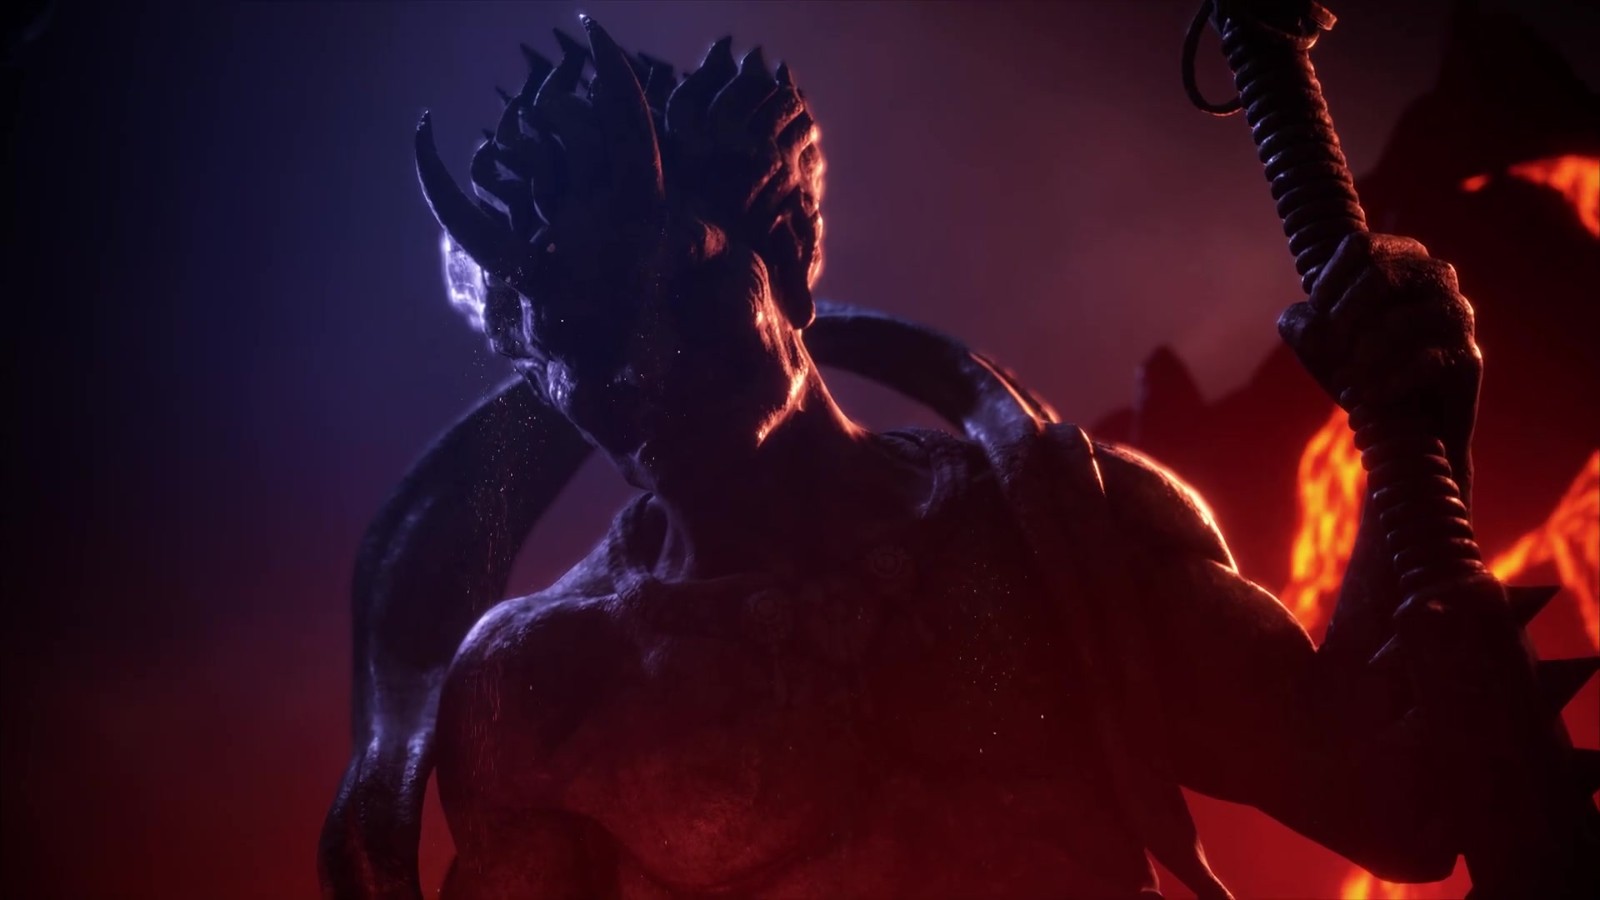 《街頭霸王6》公佈DLC角色豪鬼 第2年內容已在開發中